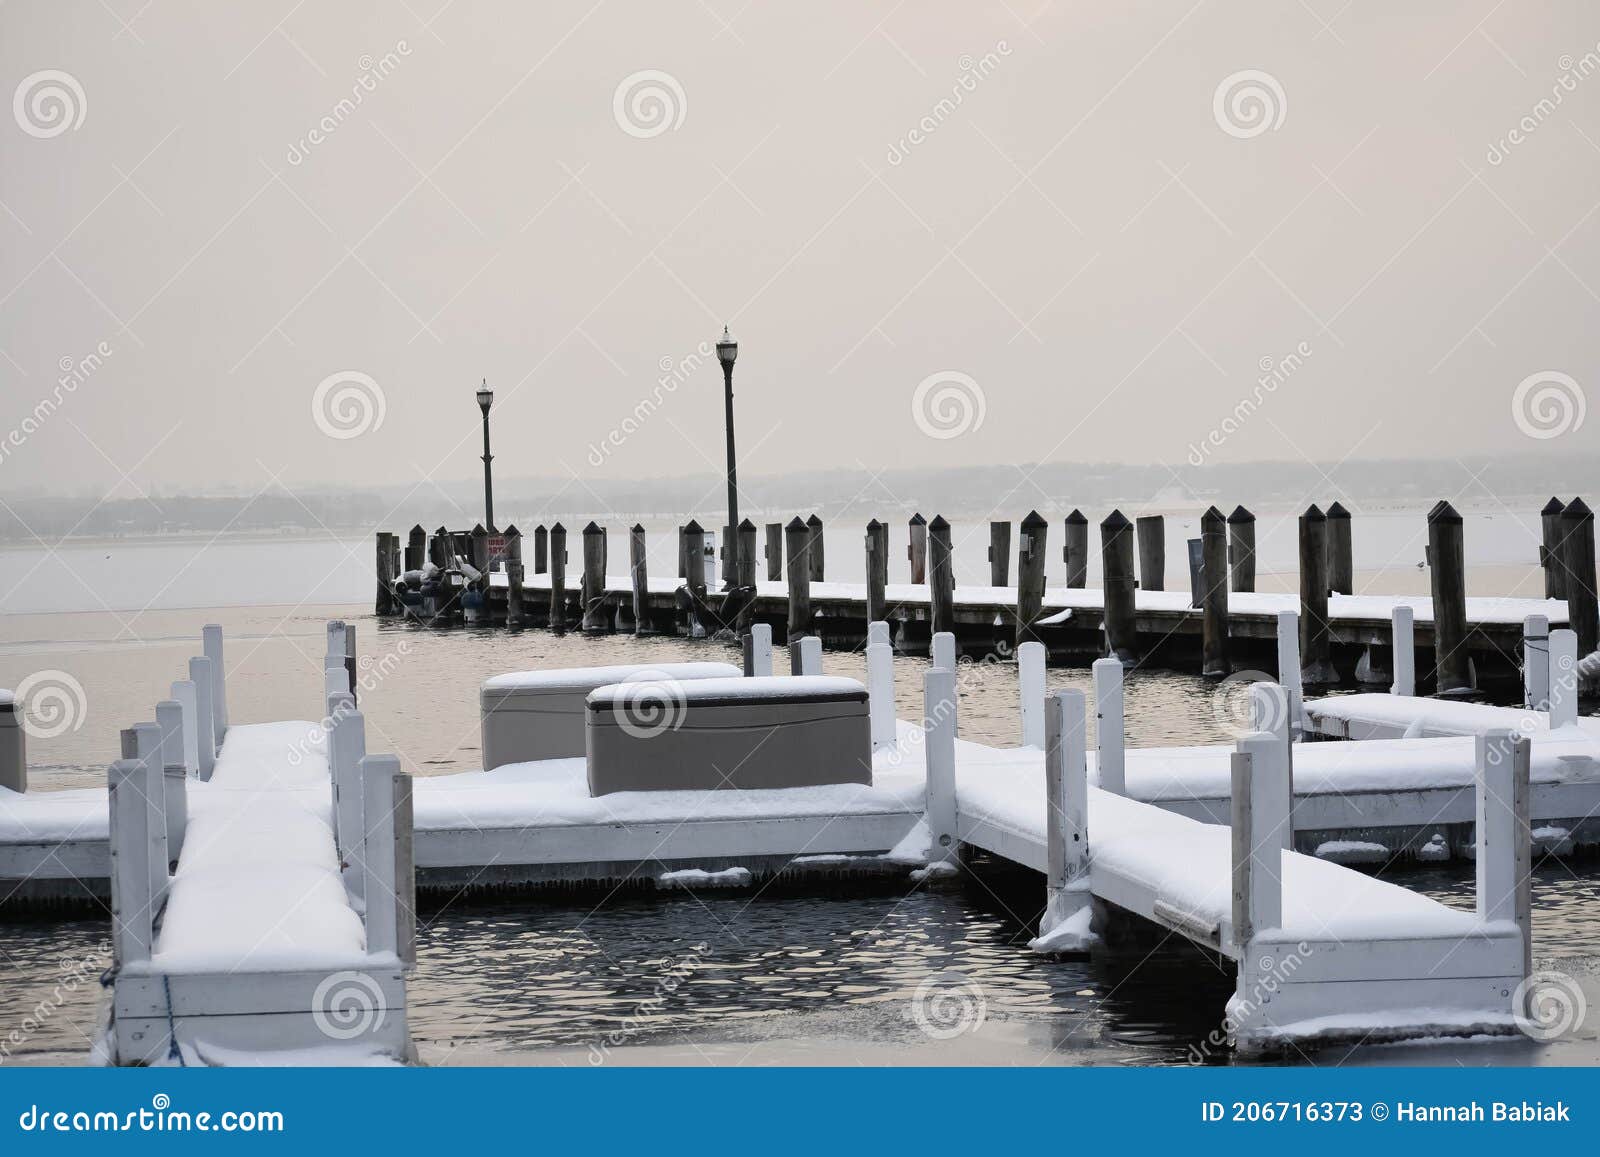 piers on lake geneva, wisconsin in winter